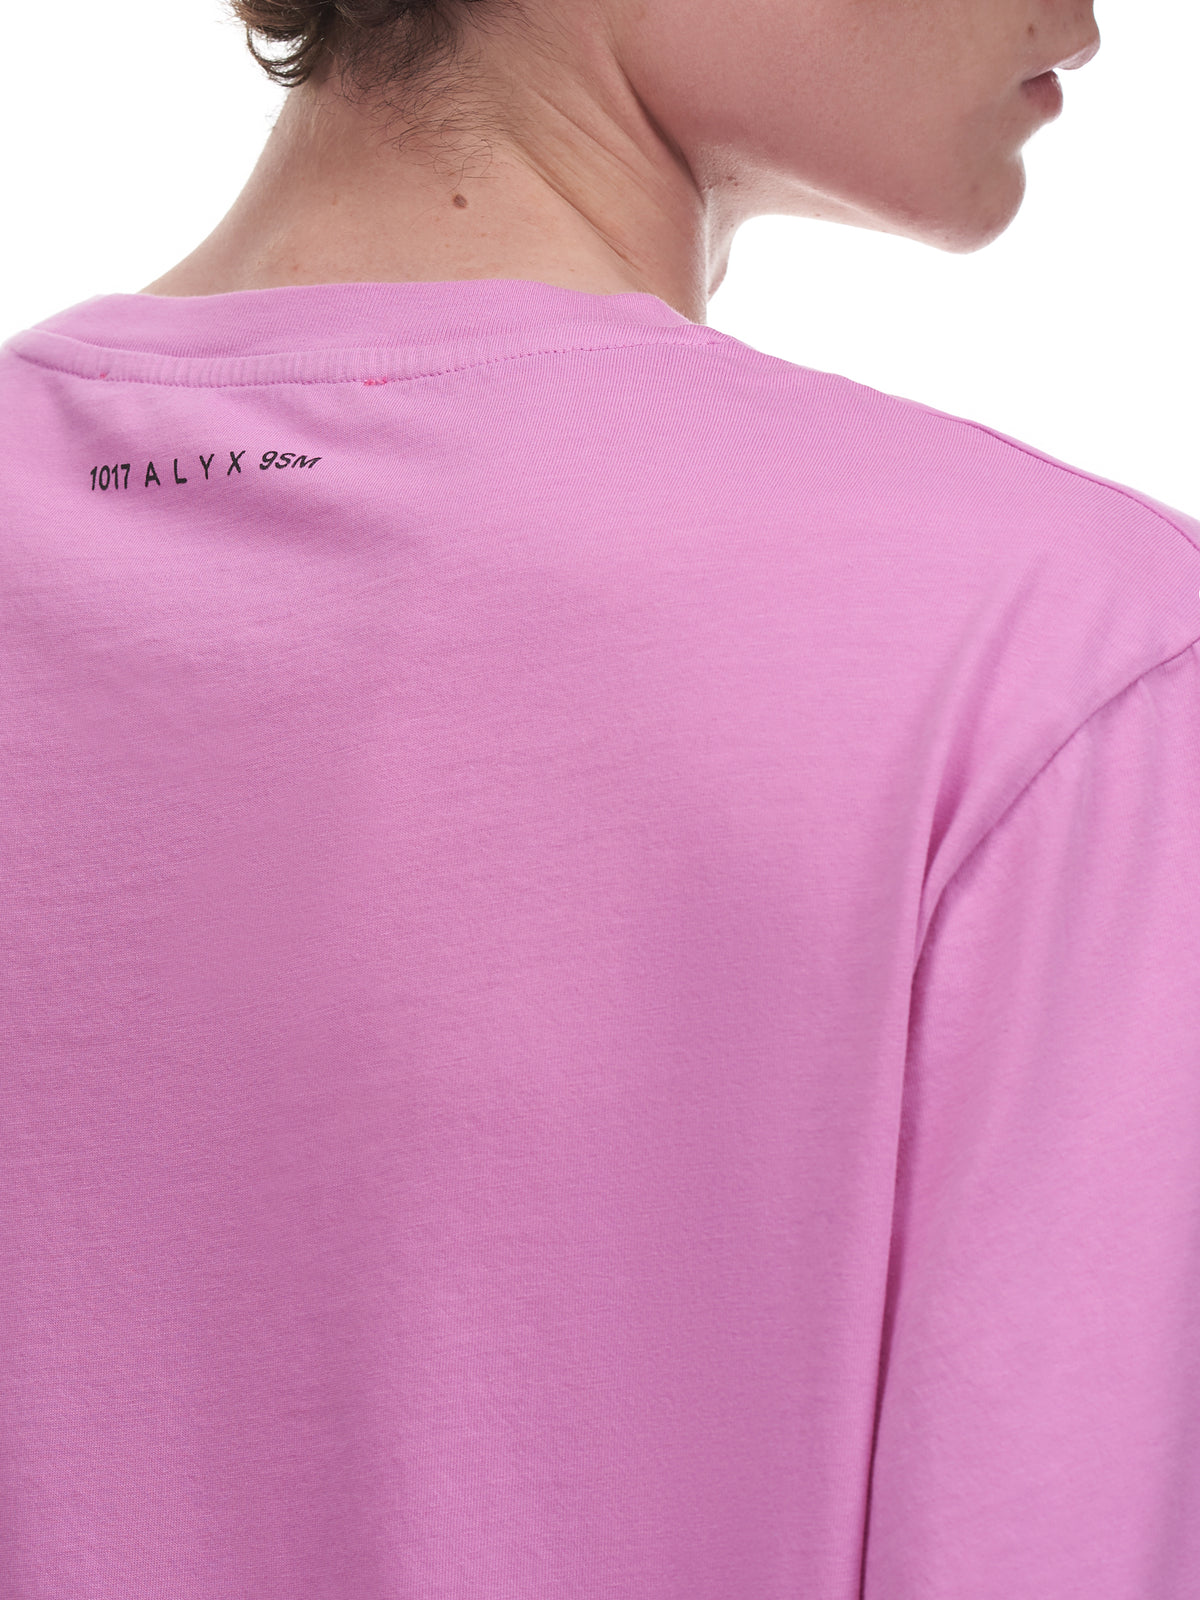 1017 Alyx 9SM Third Eye Shirt | H. Lorenzo - detail 